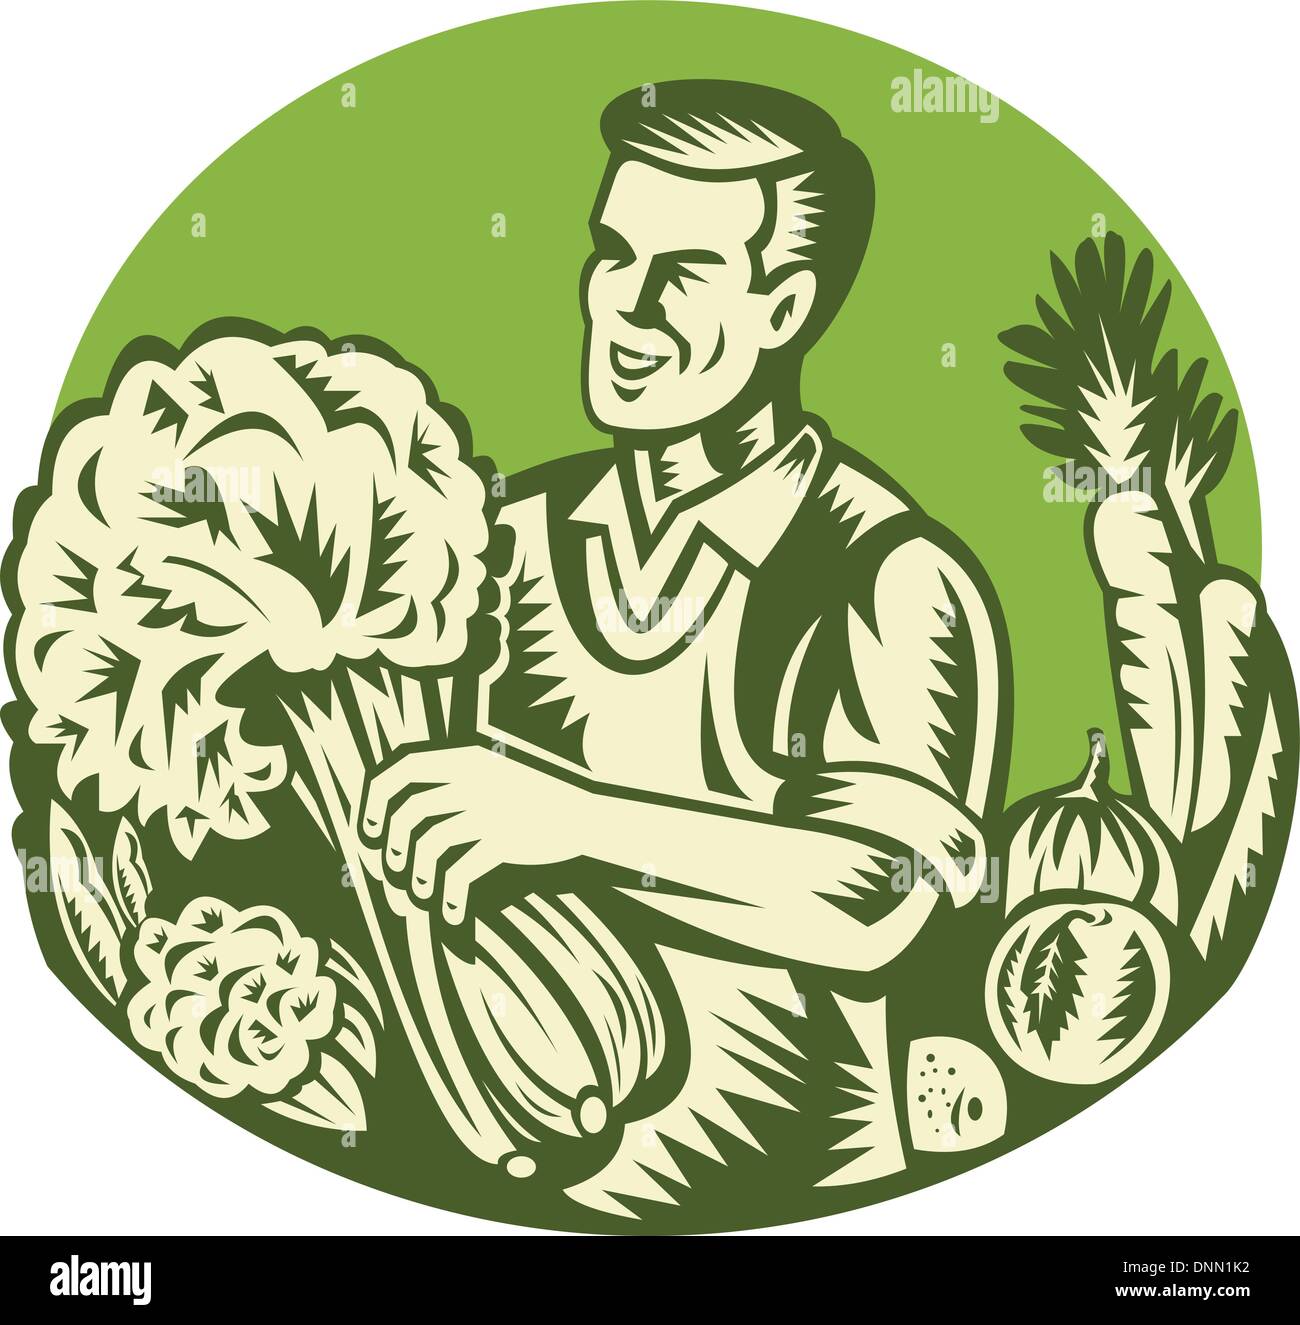 Illustration d'un agriculteur biologique green grocer la récolte des légumes verts mis à l'intérieur du cercle fait retro woodcut style. Illustration de Vecteur